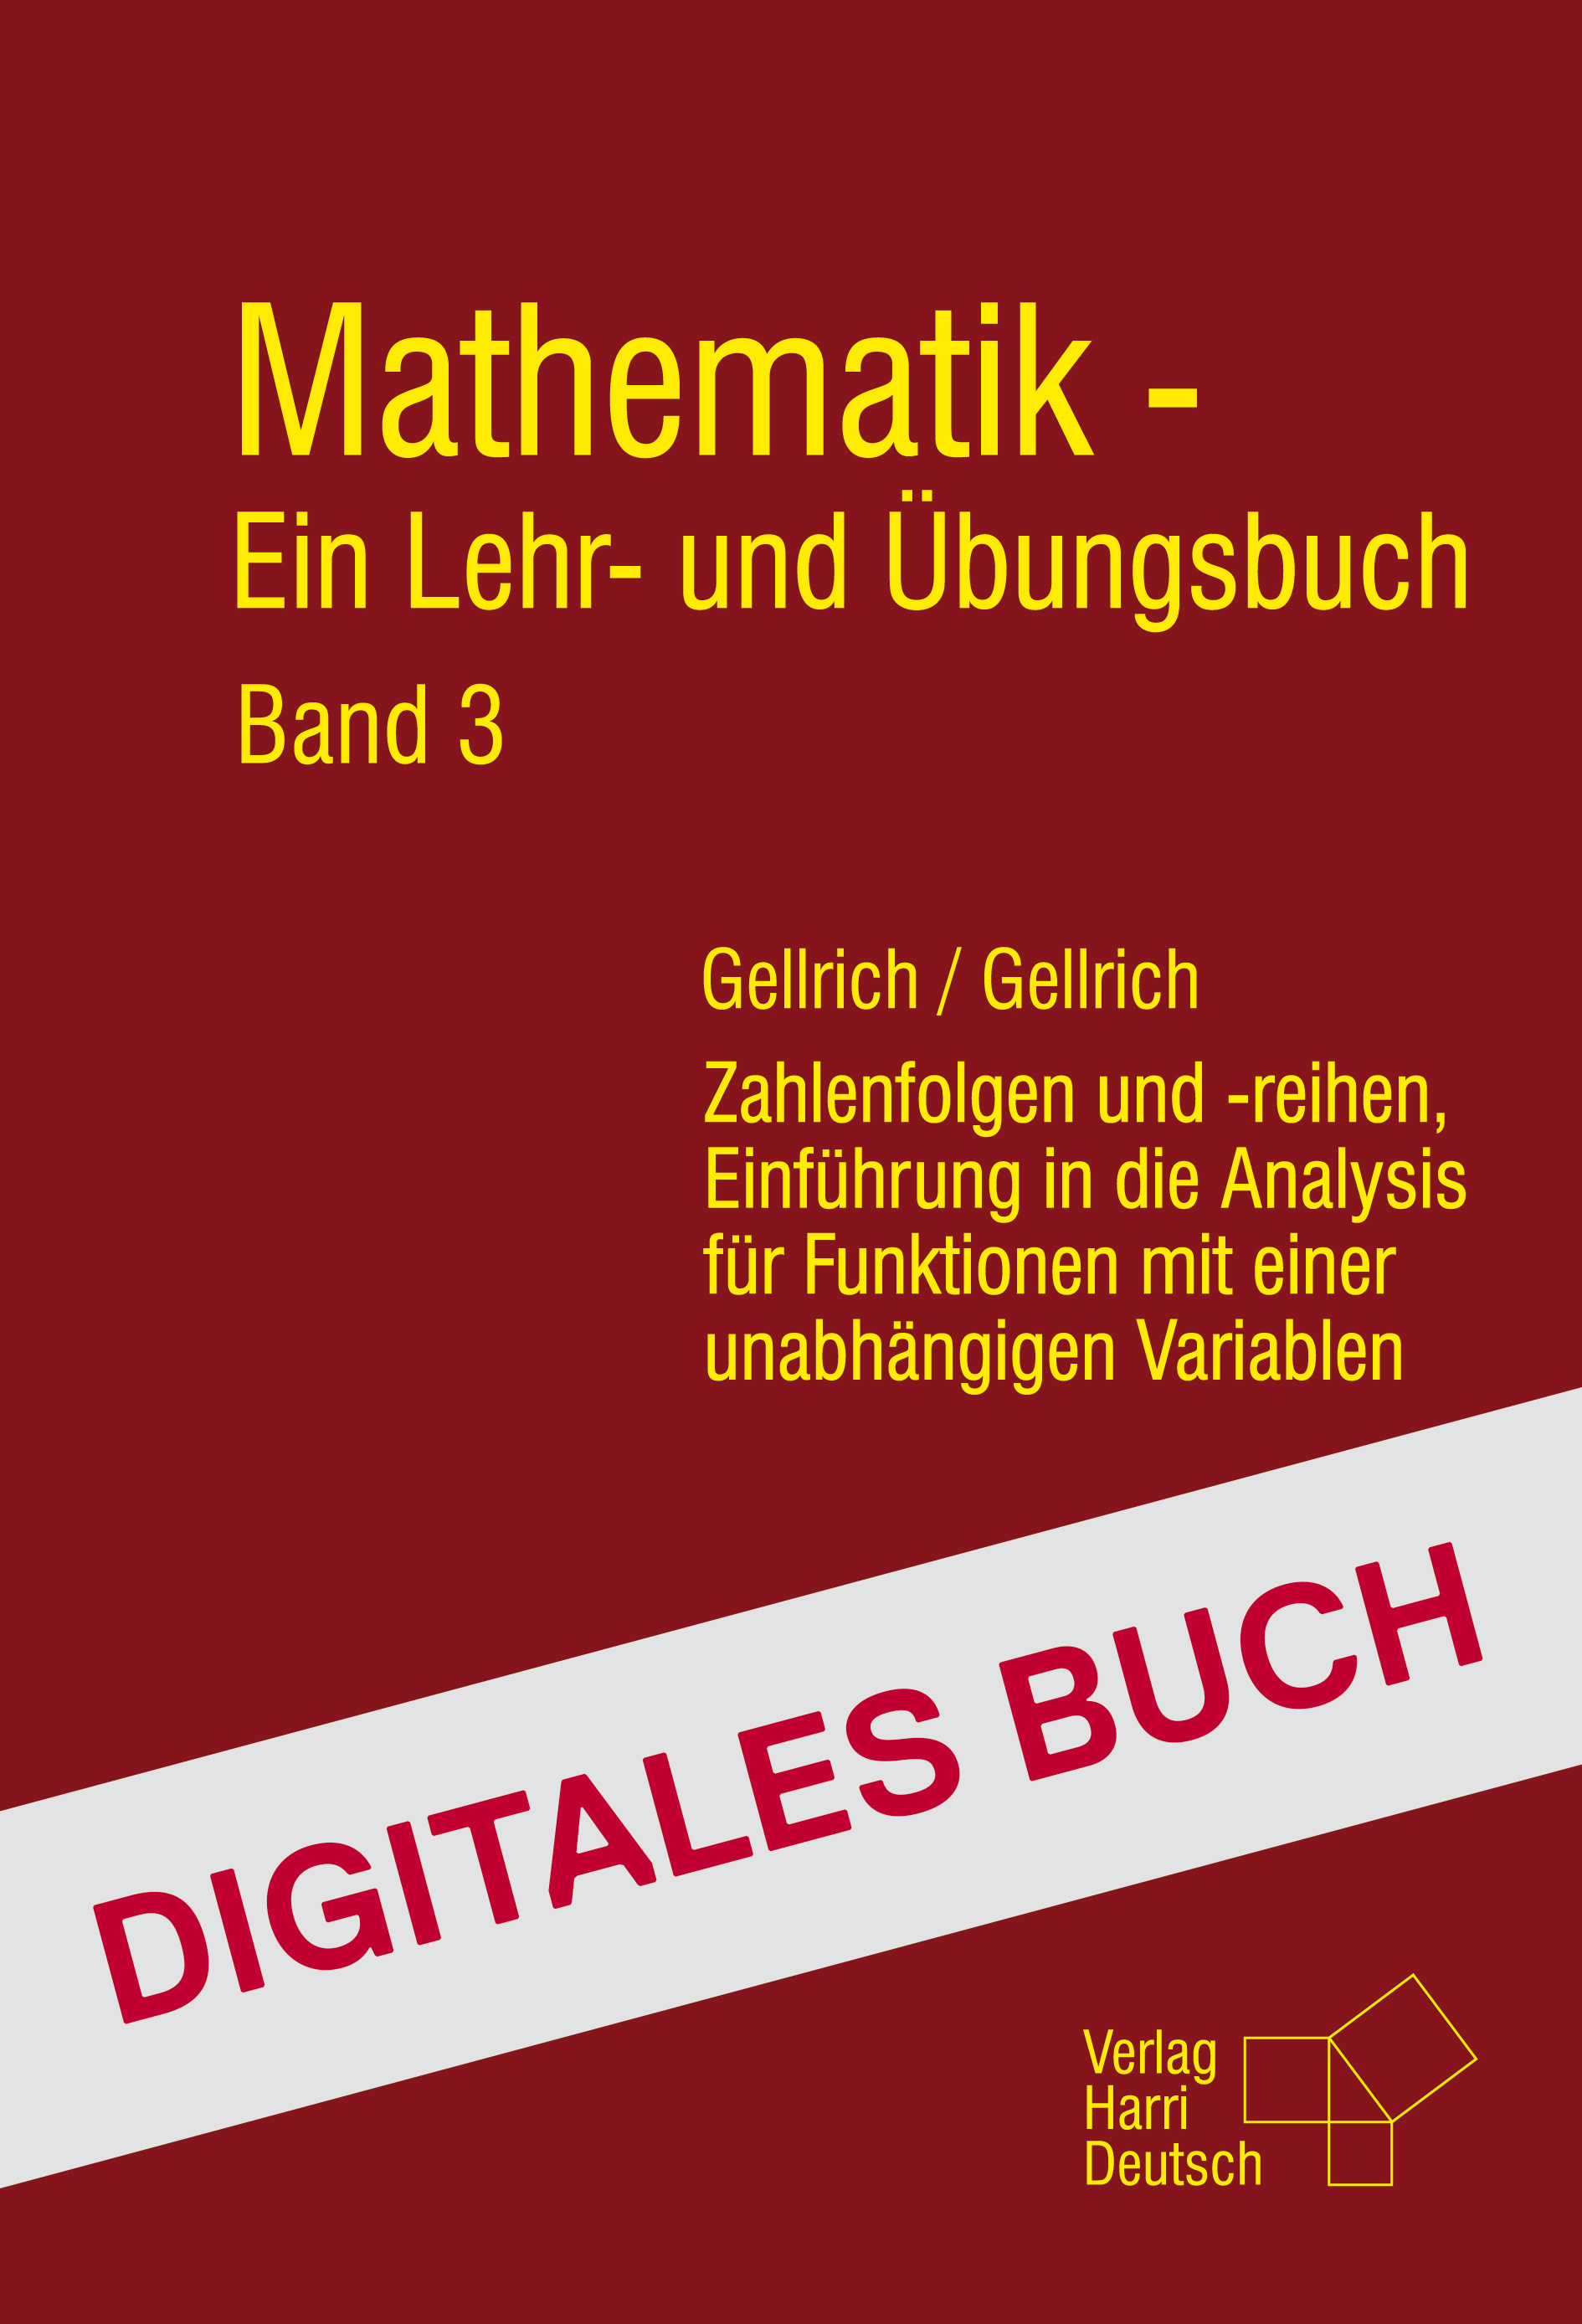 Mathematik - Ein Lehr- und Übungsbuch: Band 3 - Digitales Buch